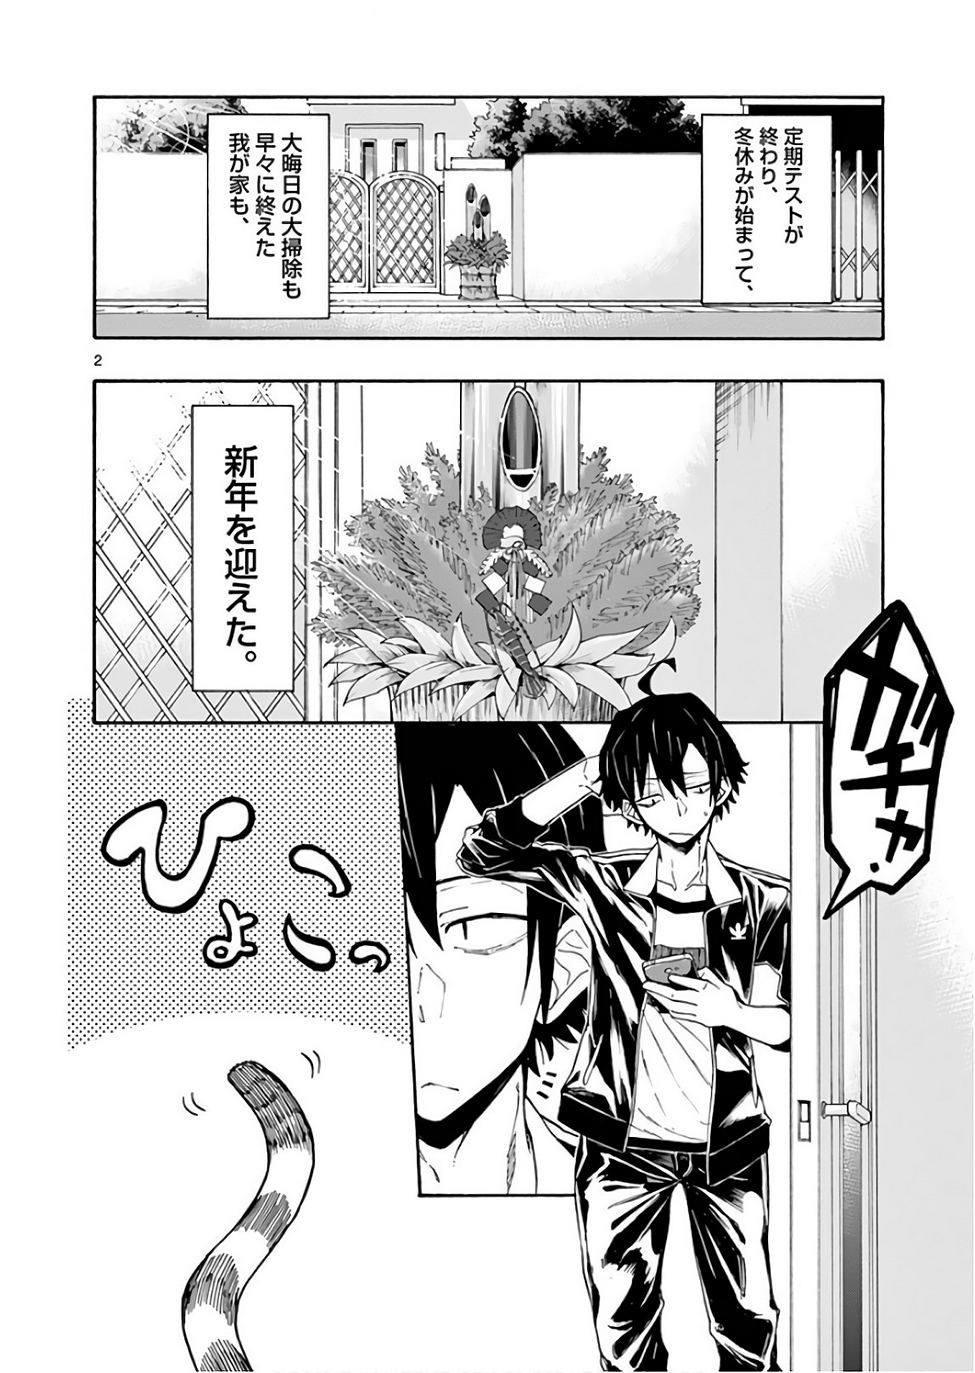 Yahari Ore no Seishun Rabukome wa Machigatte Iru. @ Comic - Chapter 73 - Page 2